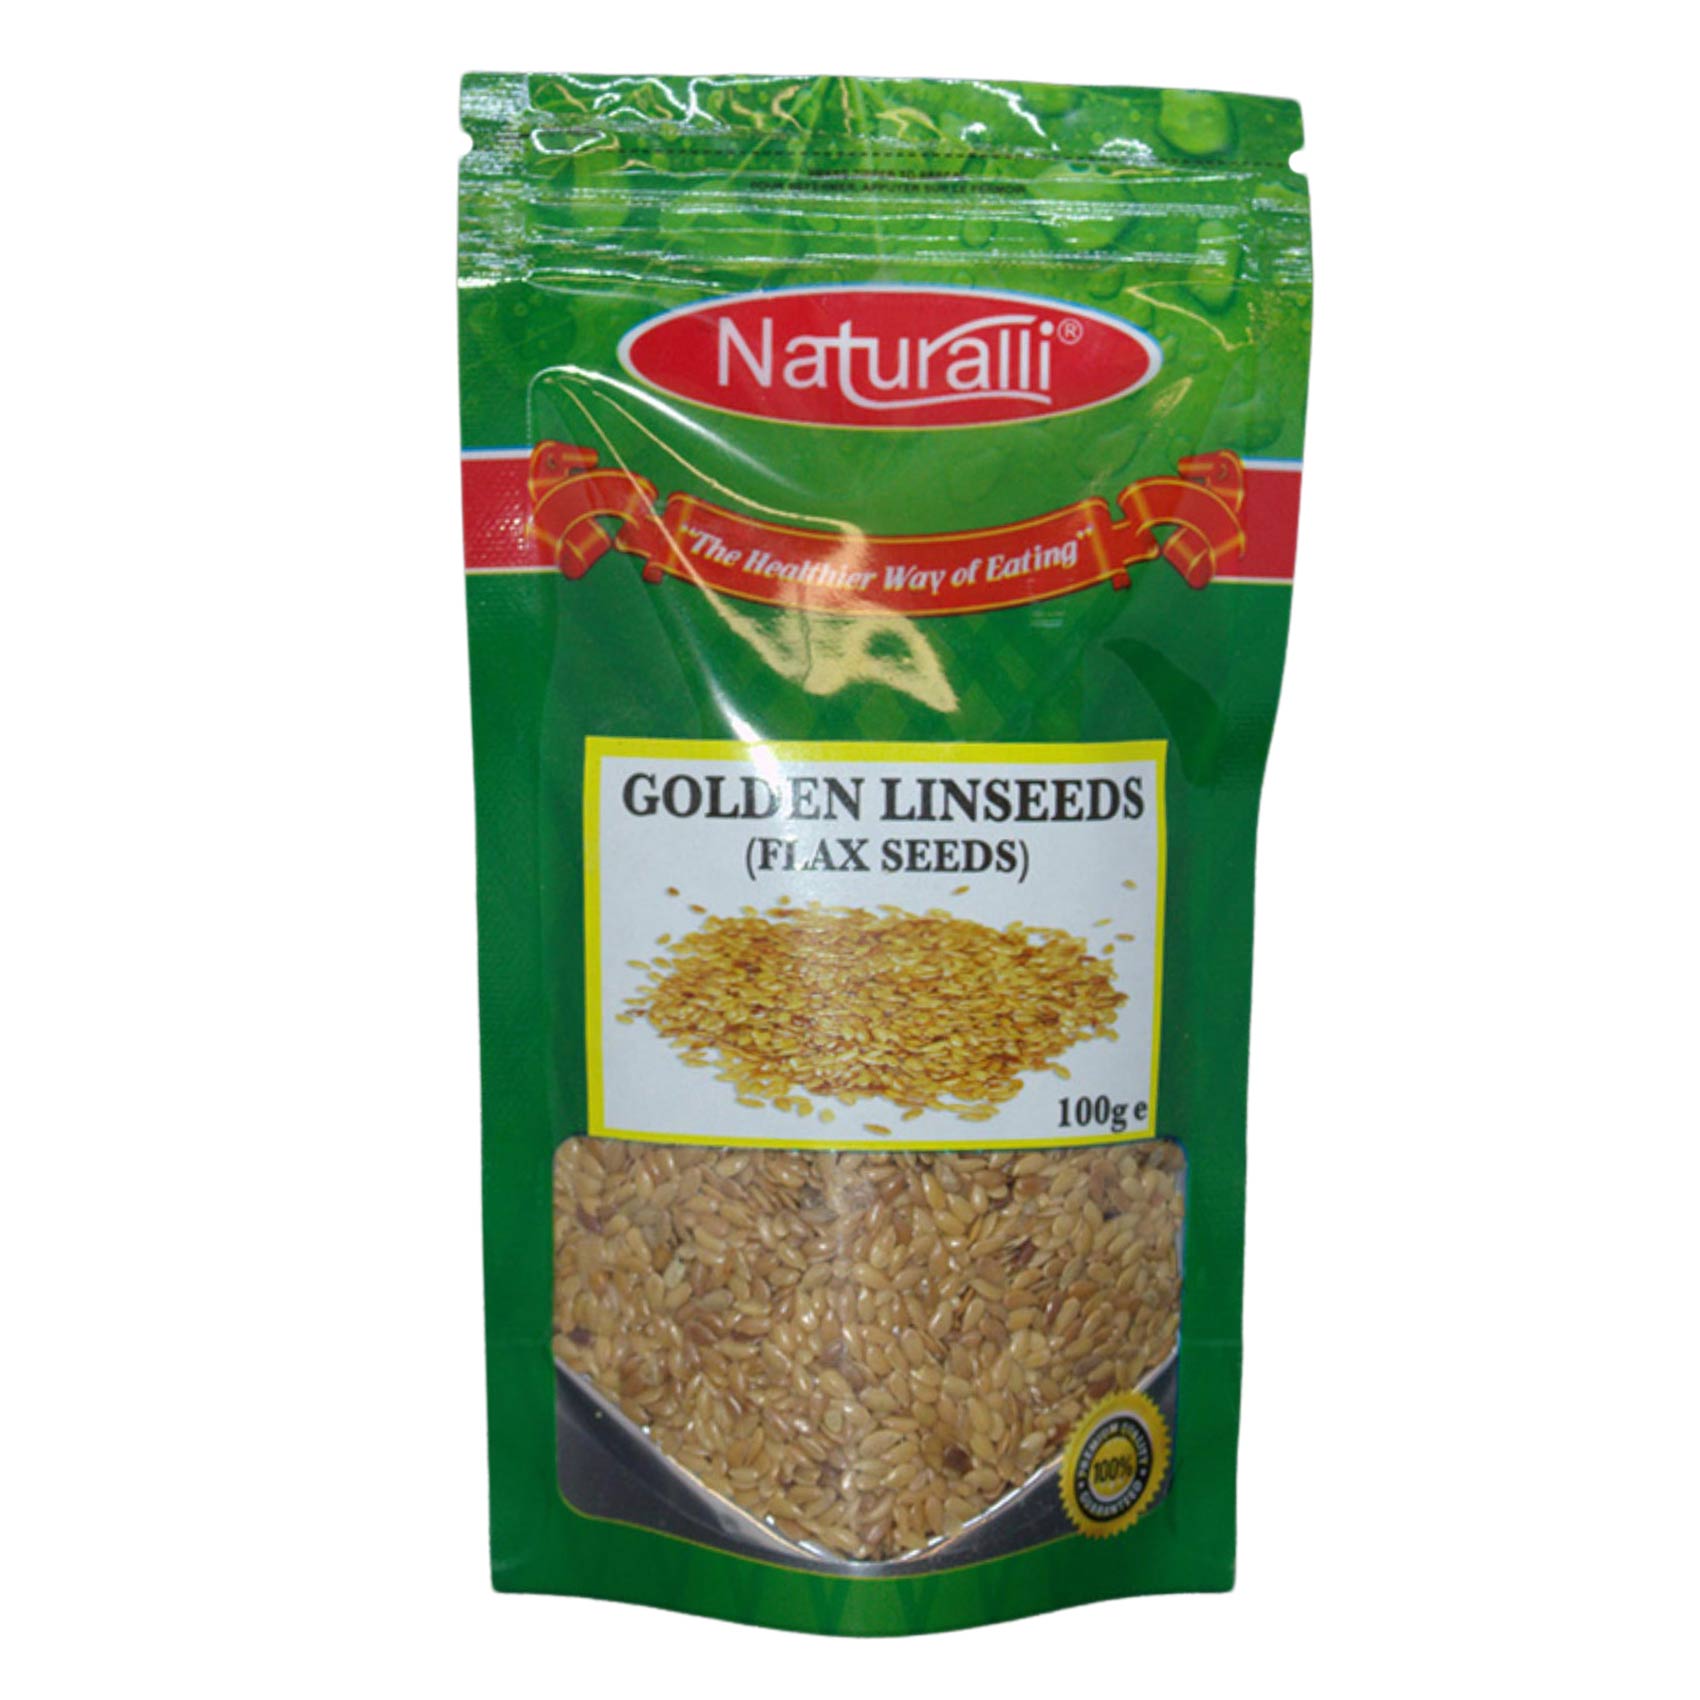 Naturalli Golden Linseeds 100g